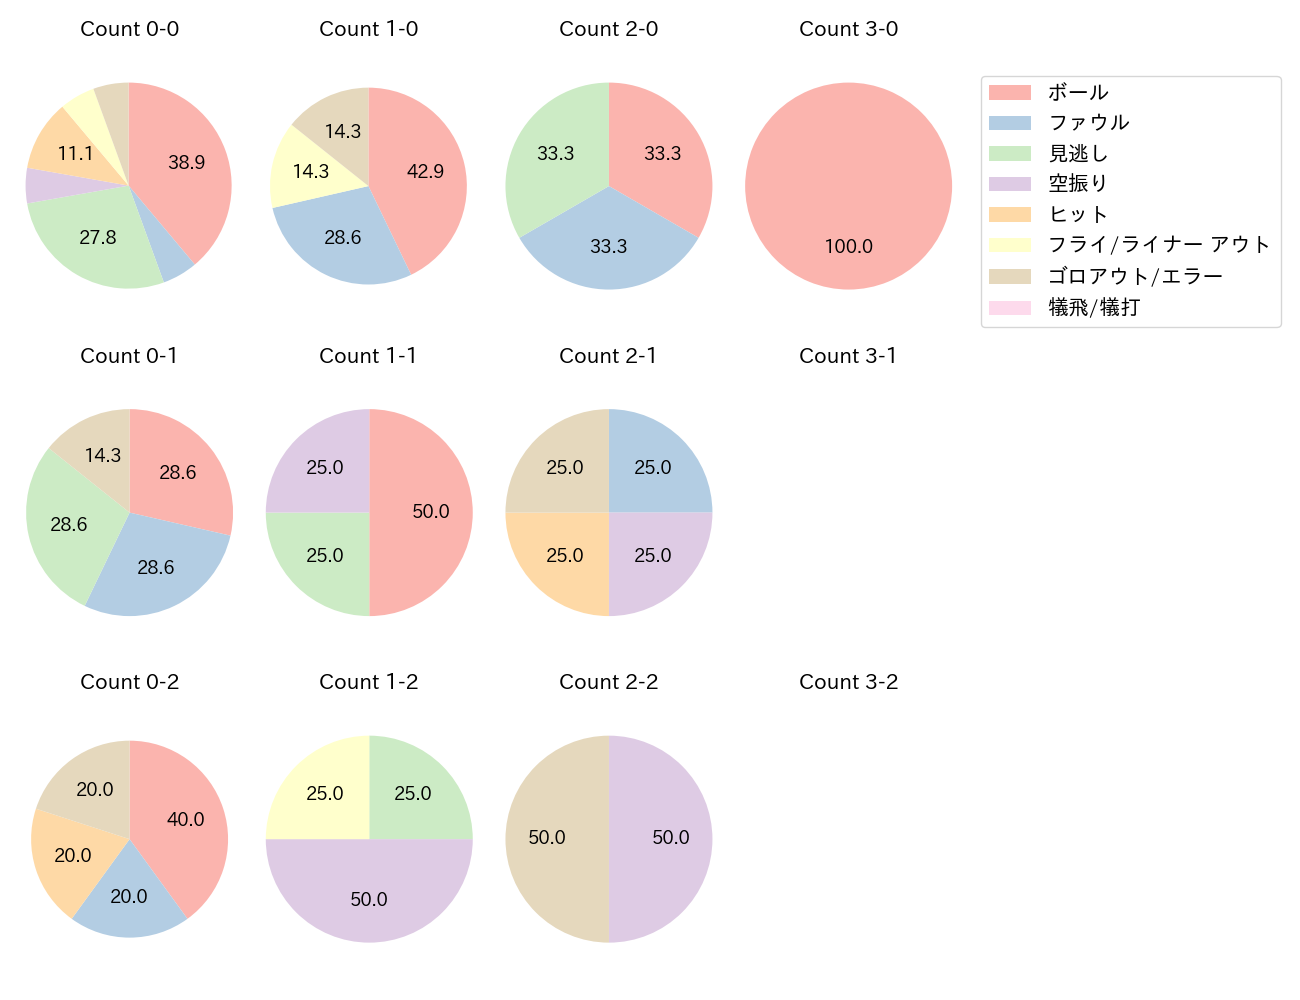 京田 陽太の球数分布(2021年3月)